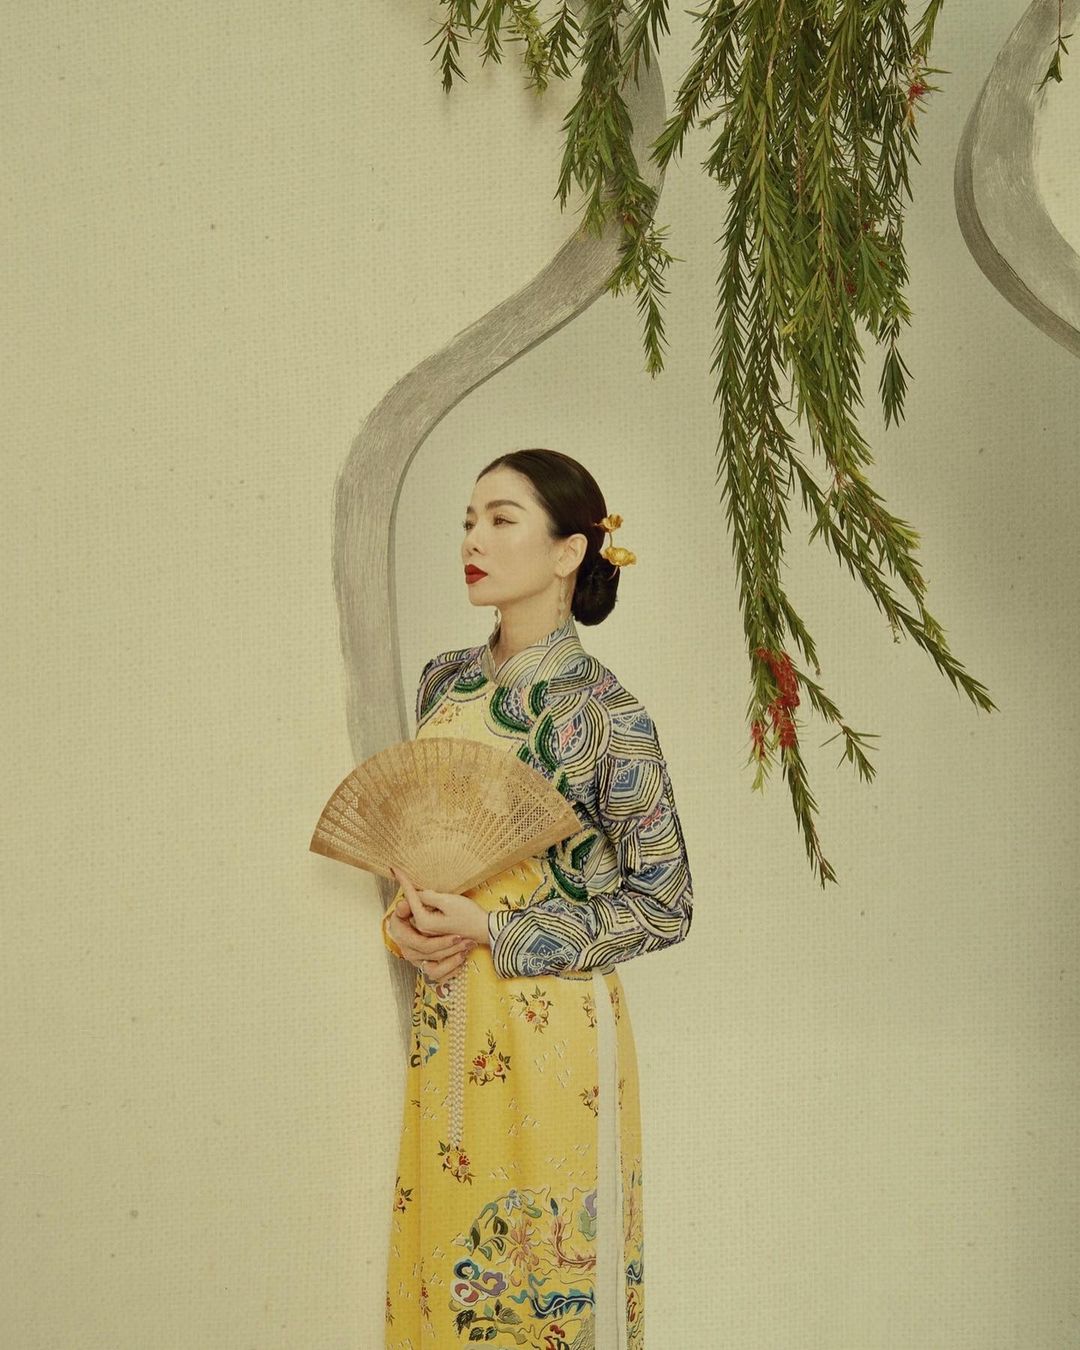 1001 sắc thái áo dài của mỹ nhân Việt ngày cận Tết, từ cách tân mới mẻ đến truyền thống quen thuộc đều có đủ - Ảnh 2.